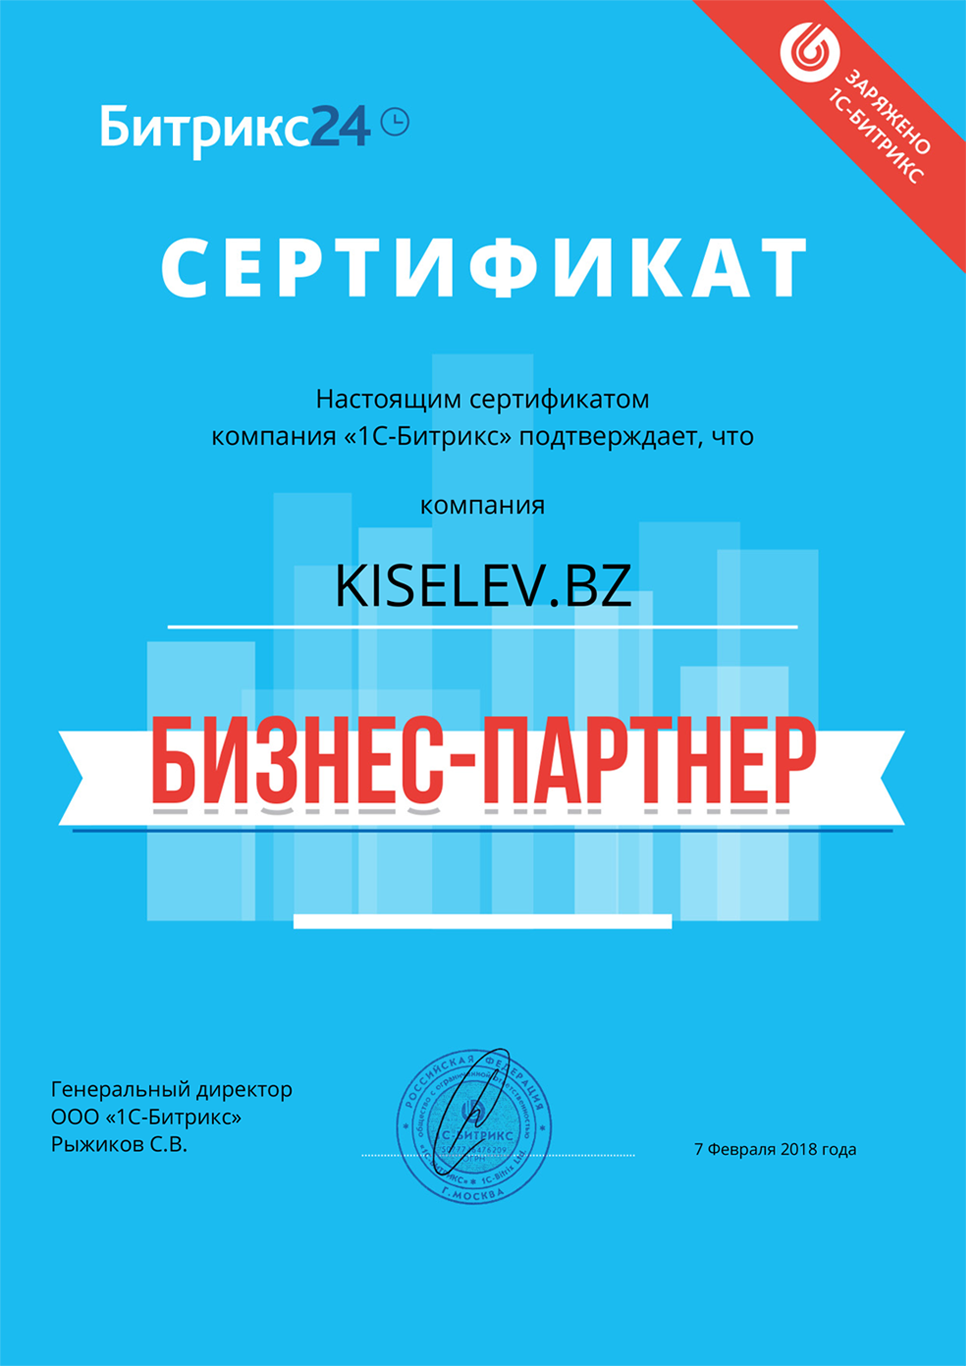 Сертификат партнёра по АМОСРМ в Самаре